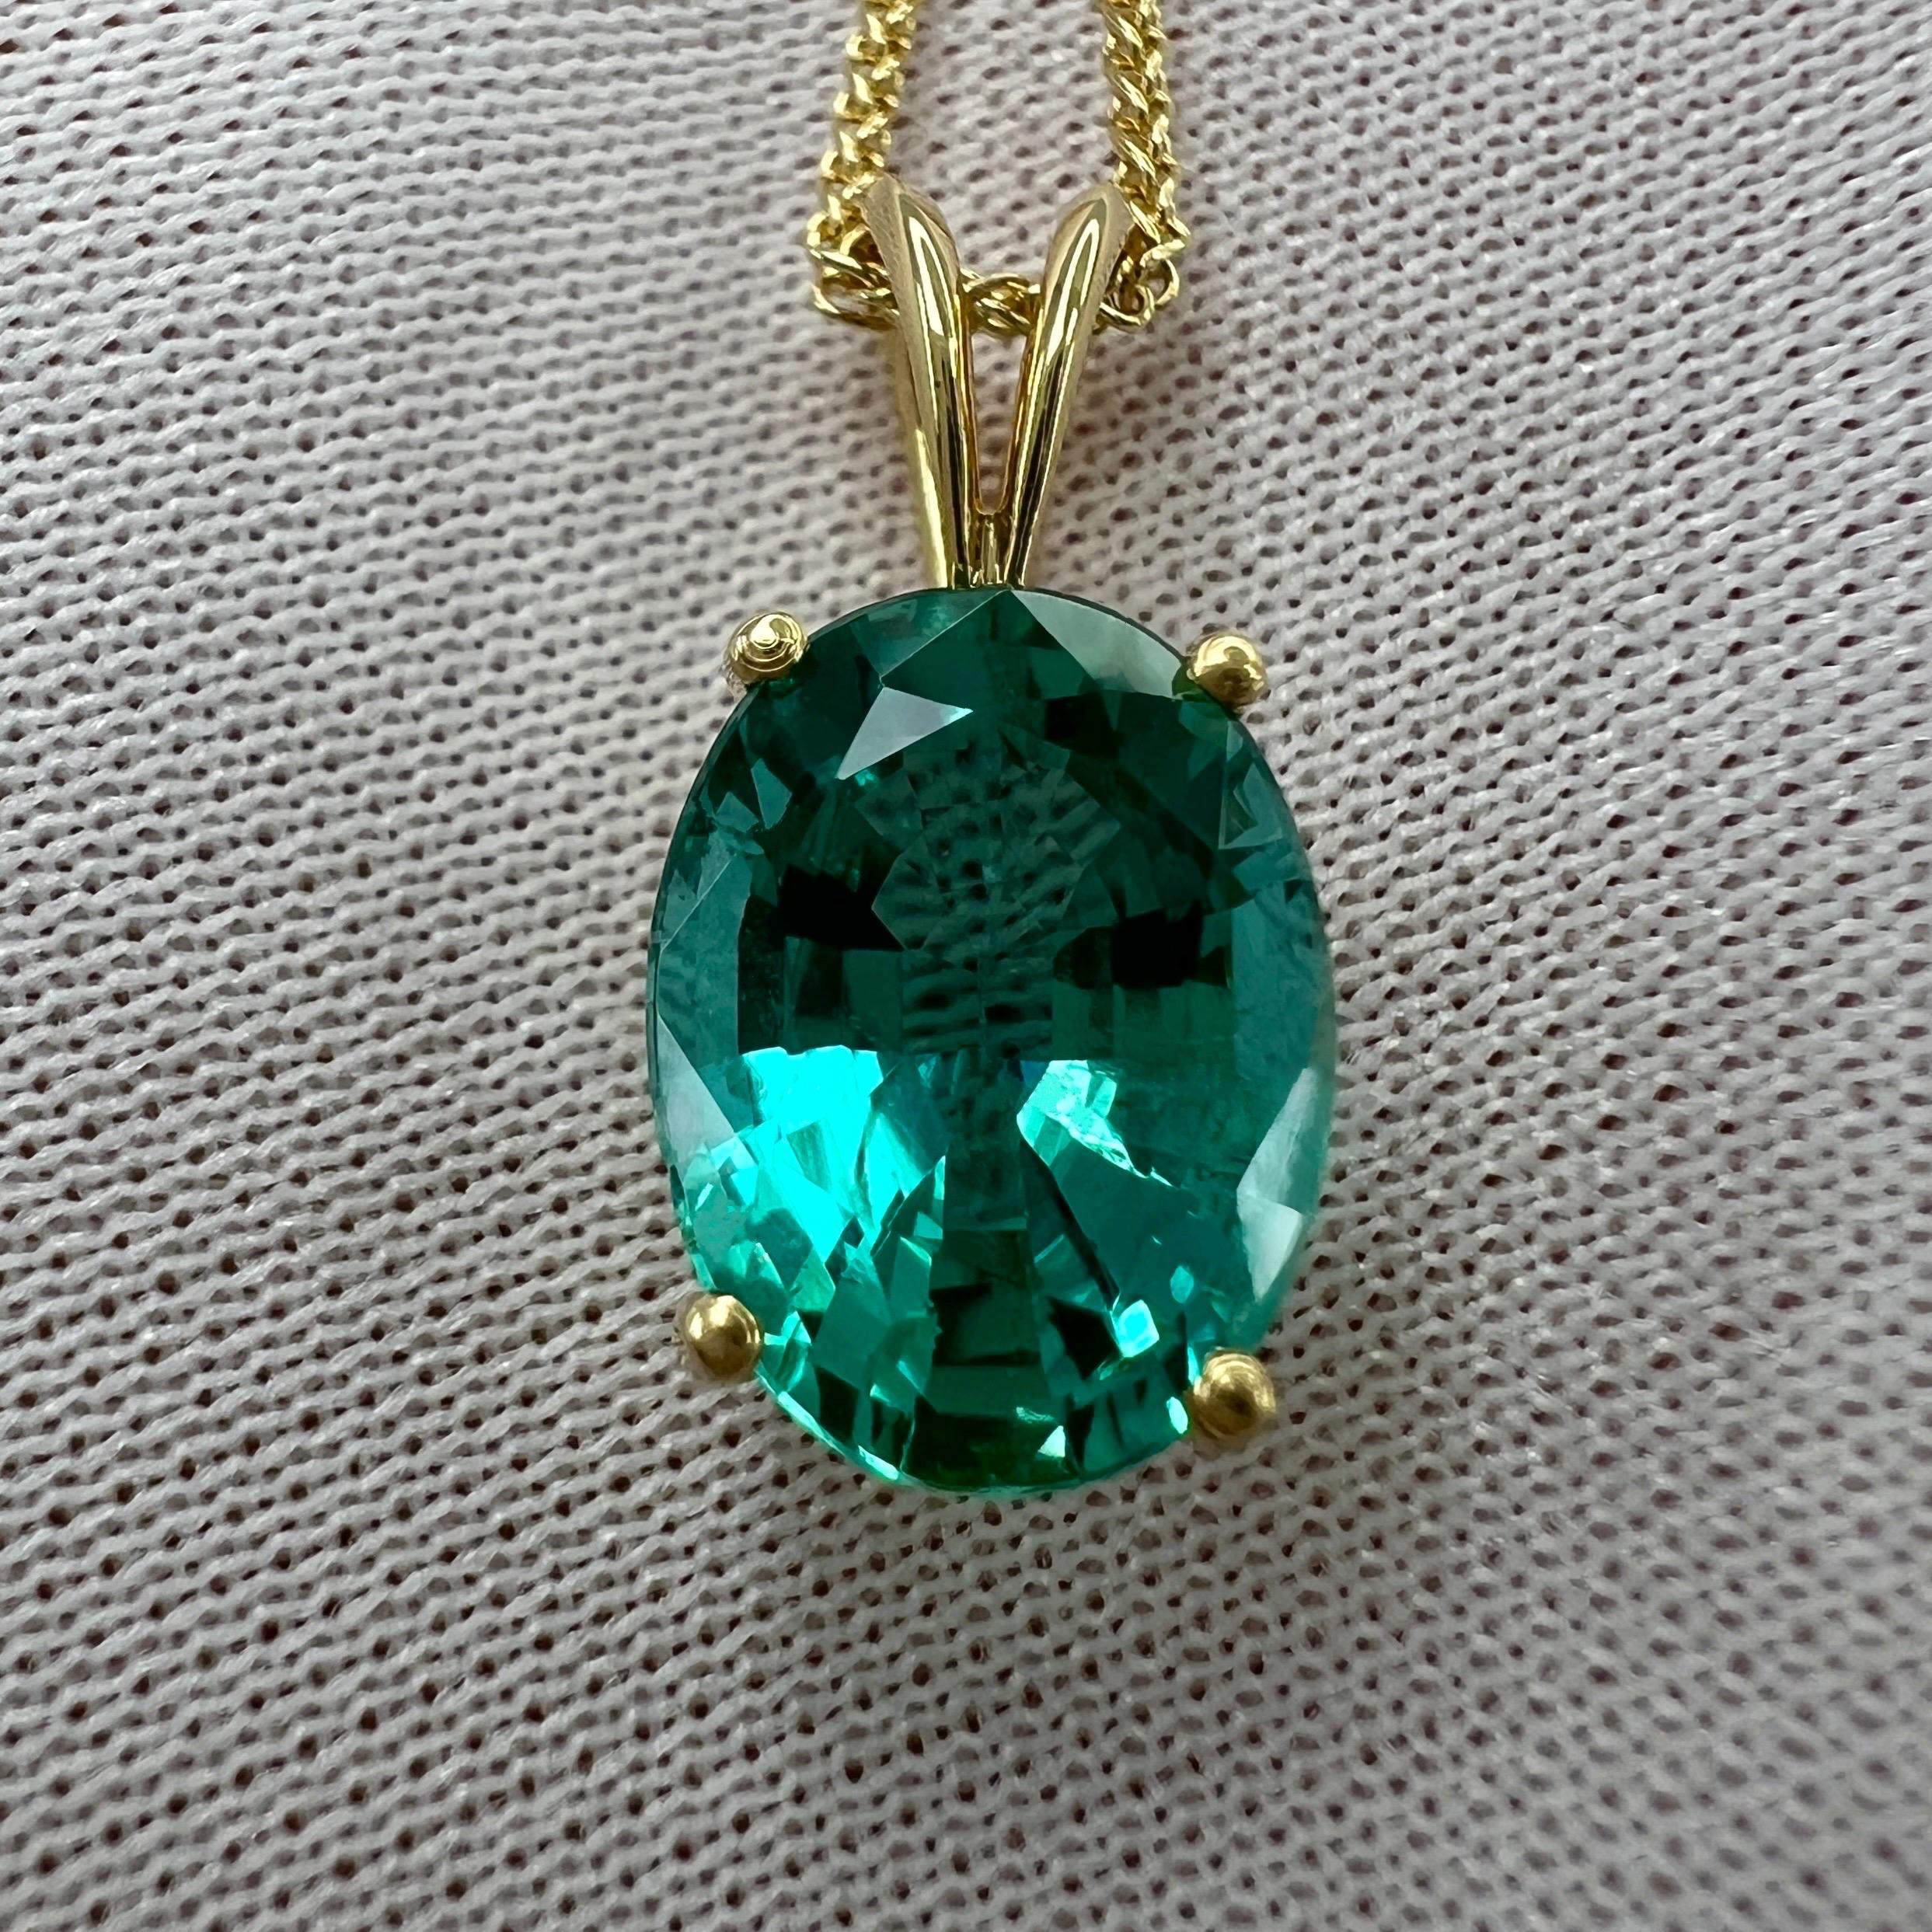 Collier à pendentif solitaire en or jaune 18 carats : Nature Fine Vivid Blue Green Oval Cut Emerald.

Magnifique émeraude d'une couleur bleu-vert unique et vive, sertie dans un pendentif solitaire à 4 griffes en or jaune 18 carats. 
La pierre brille